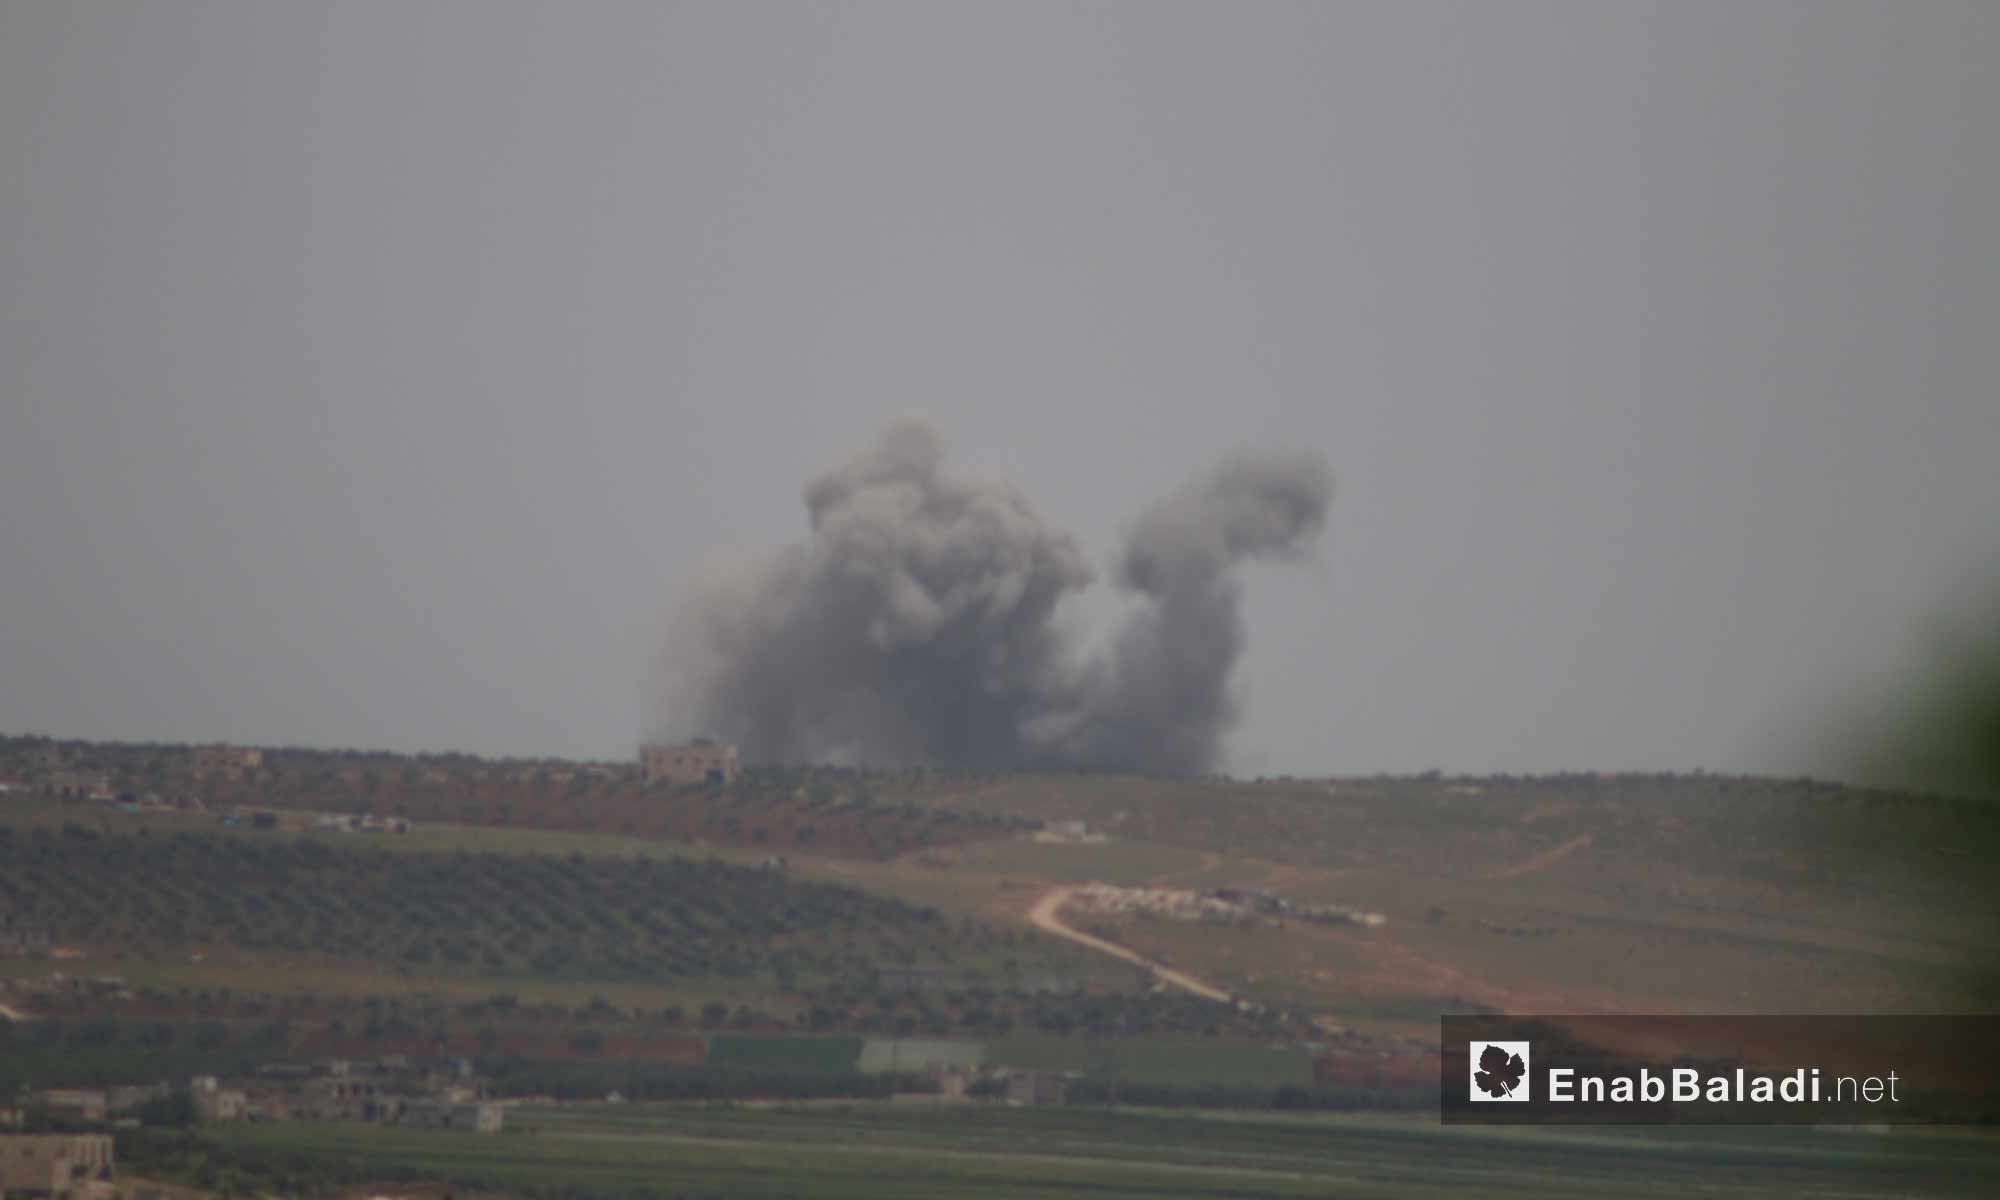 قصف جوي روسي على مناطق في ريف إدلب الجنوبي - 1 من أيار 2019 (عنب بلدي)